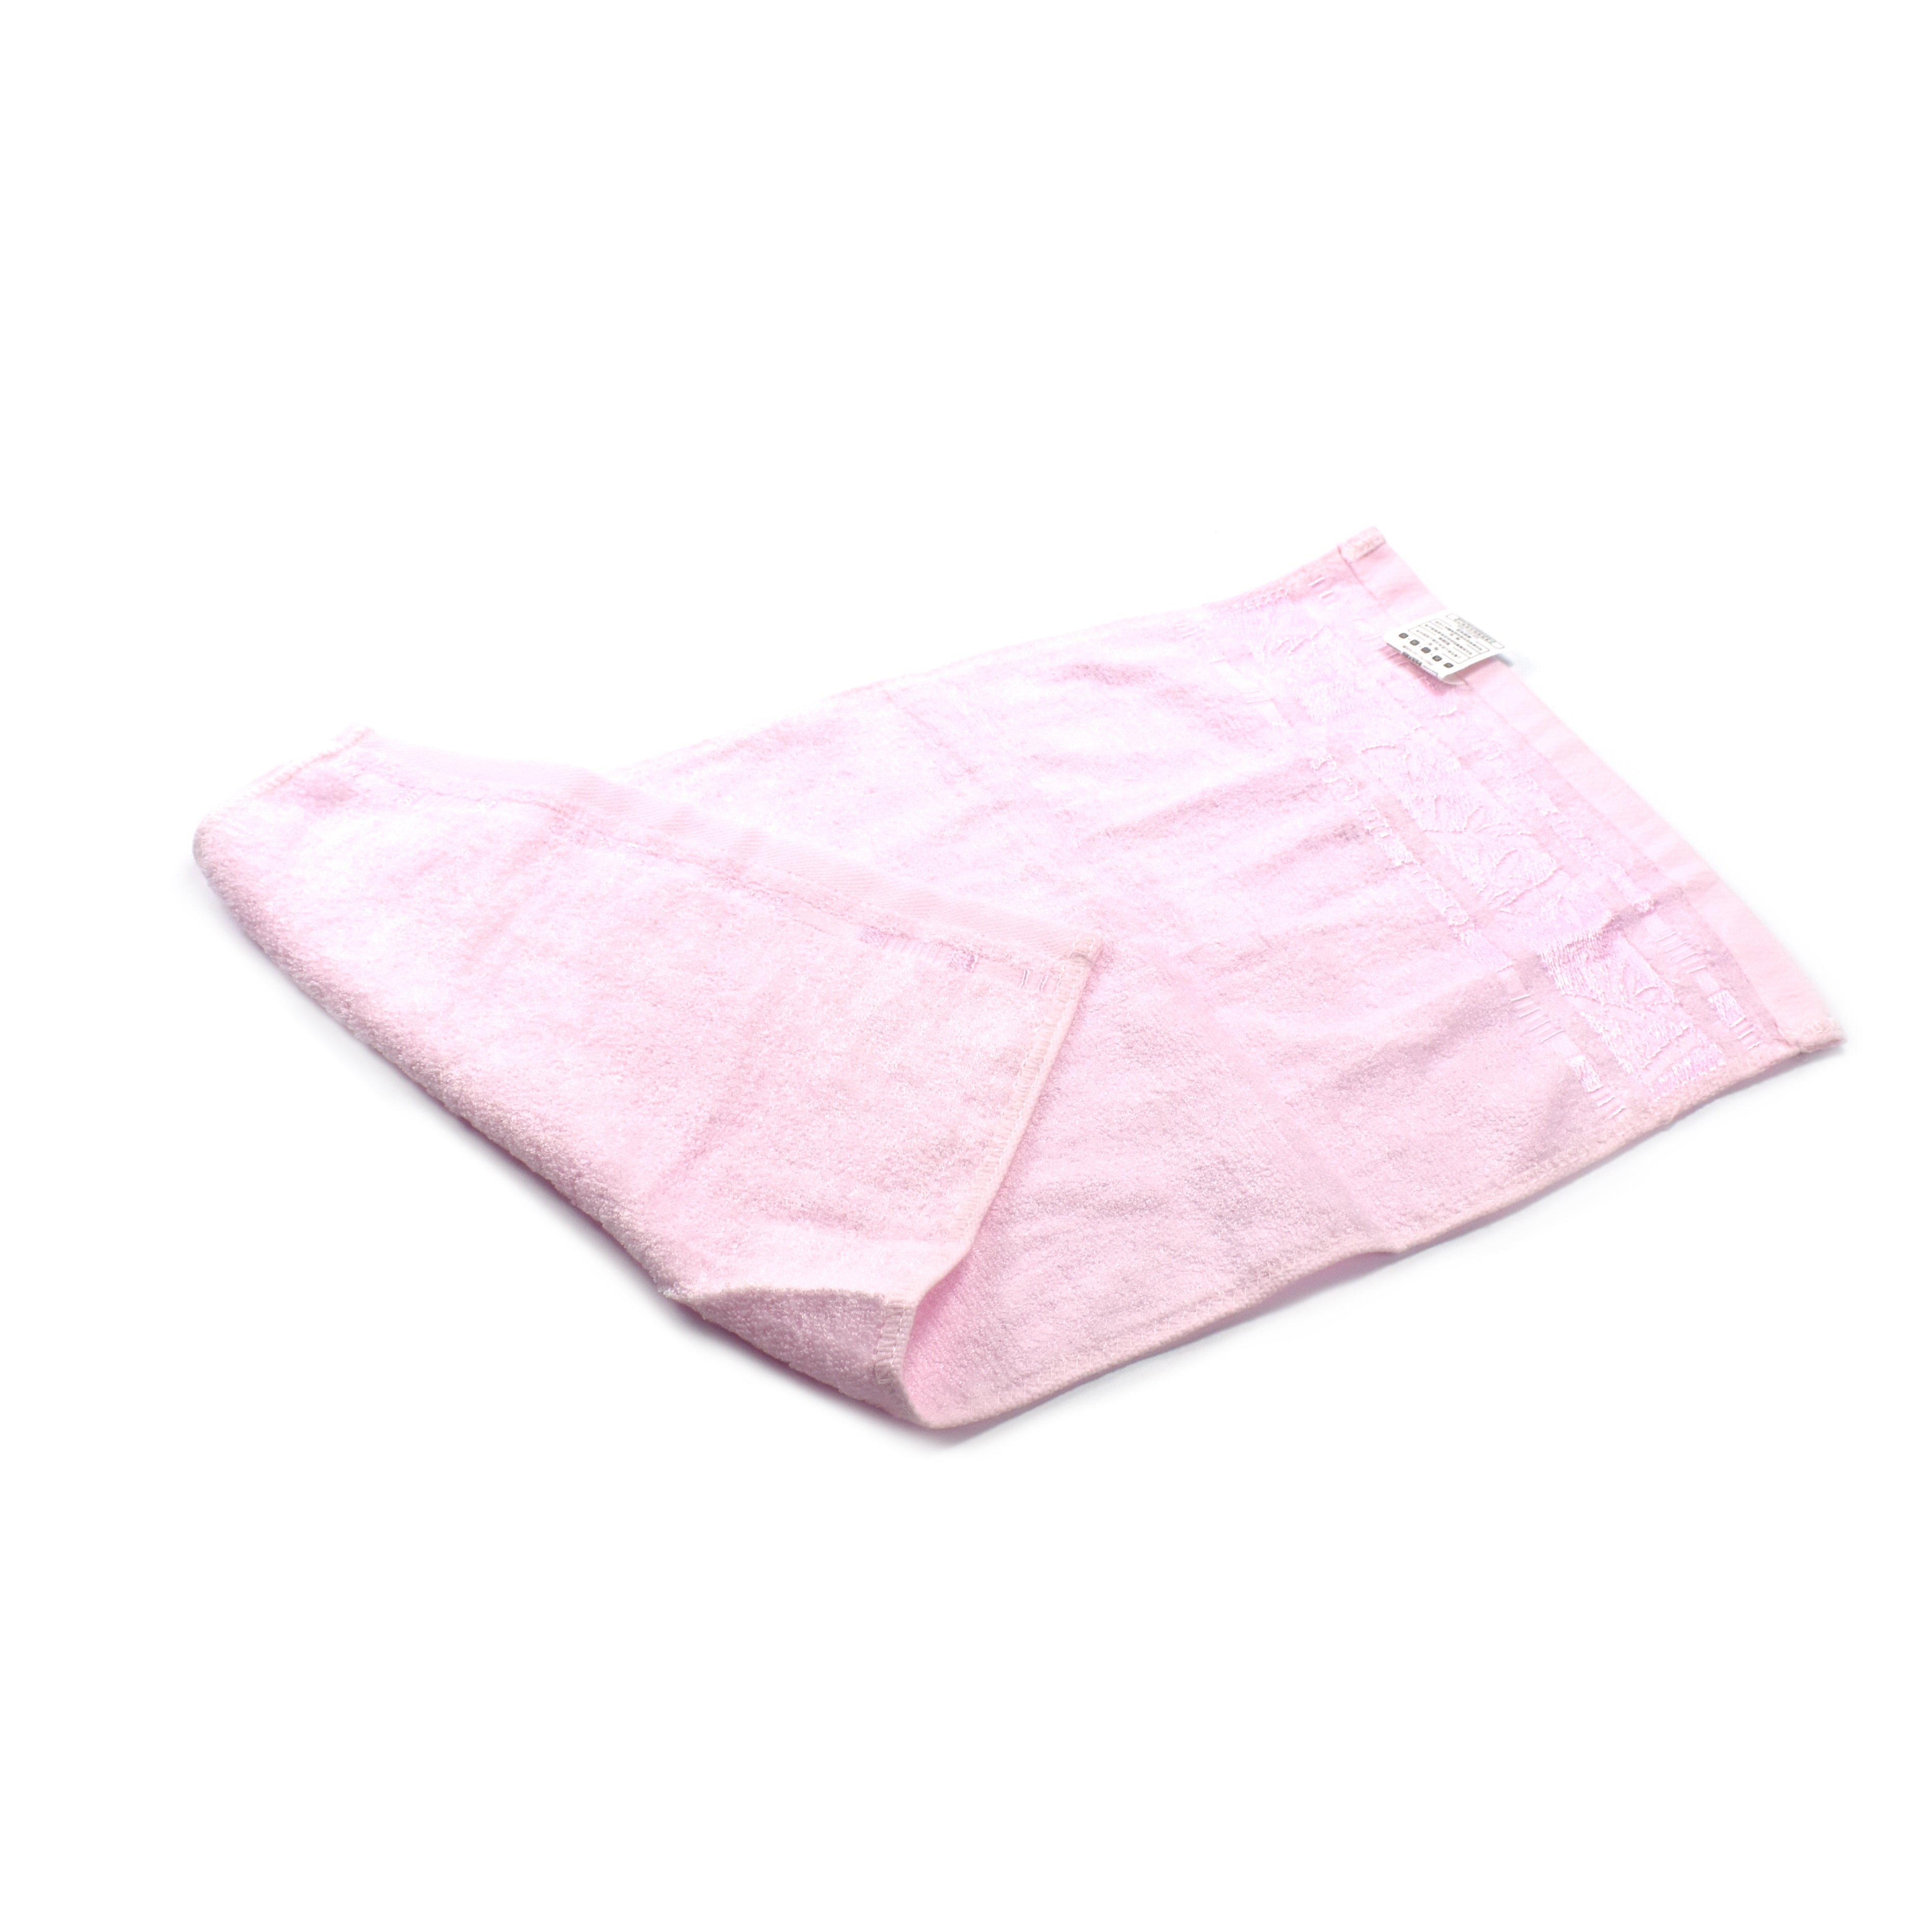 京京毛巾 童巾25x50cm 多色混发